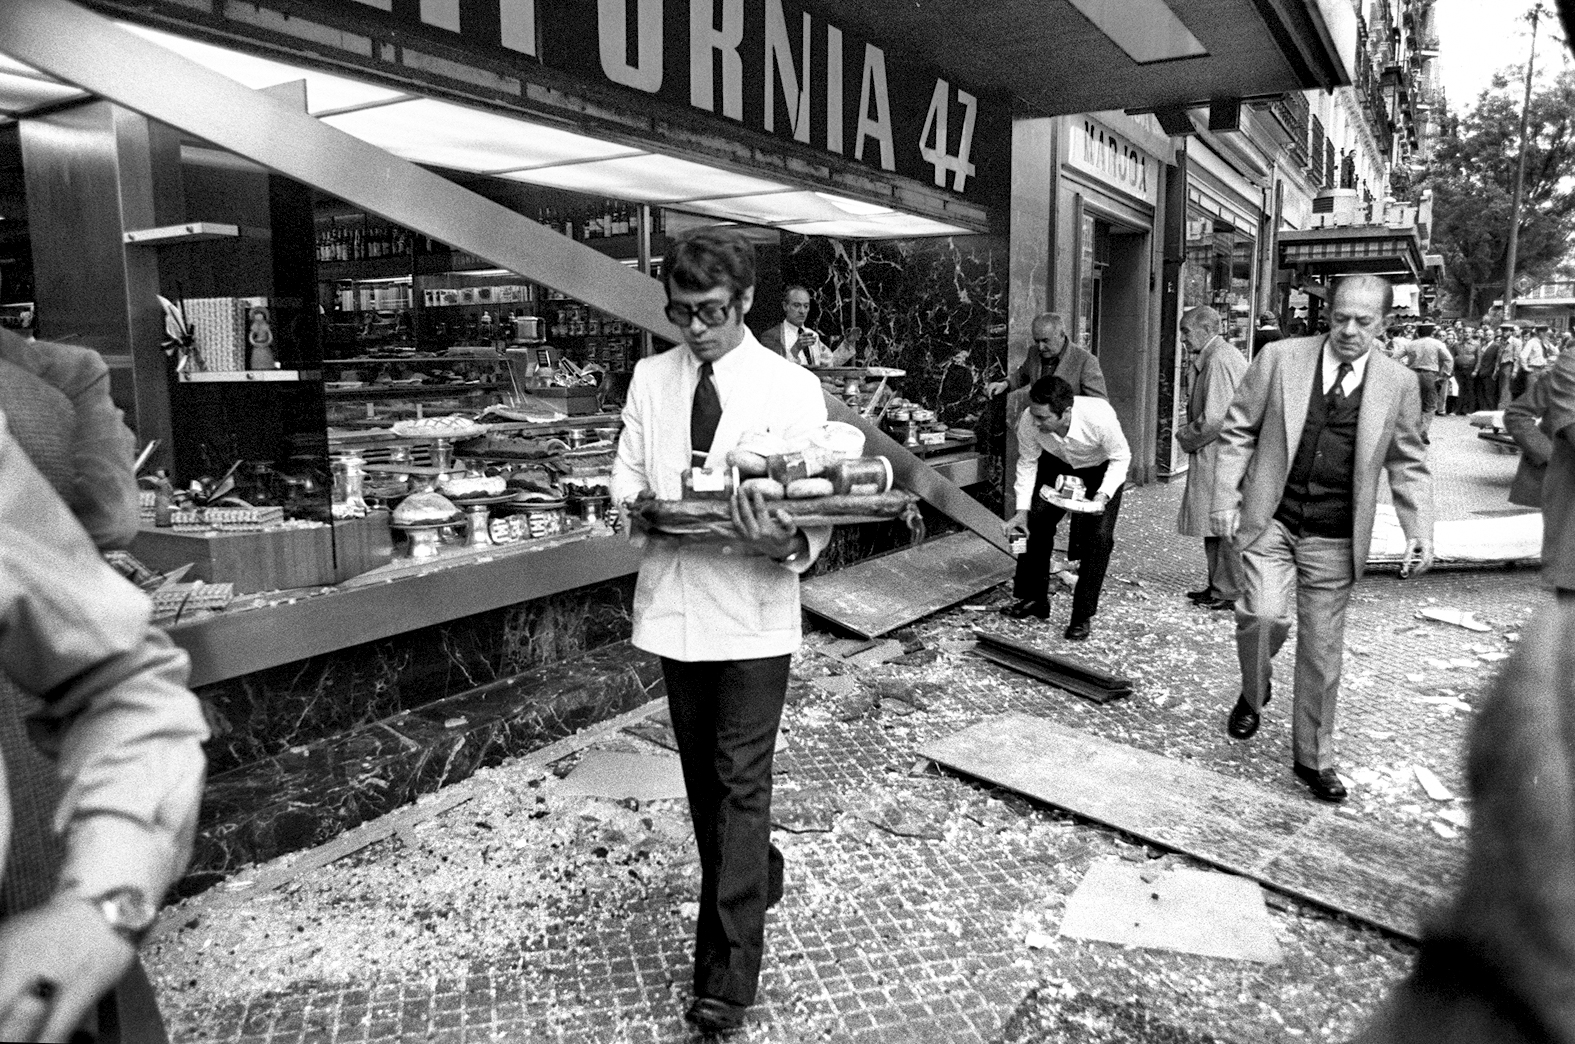 Atentado Cafetería California 47 (Bernardo Pérez, 1979)